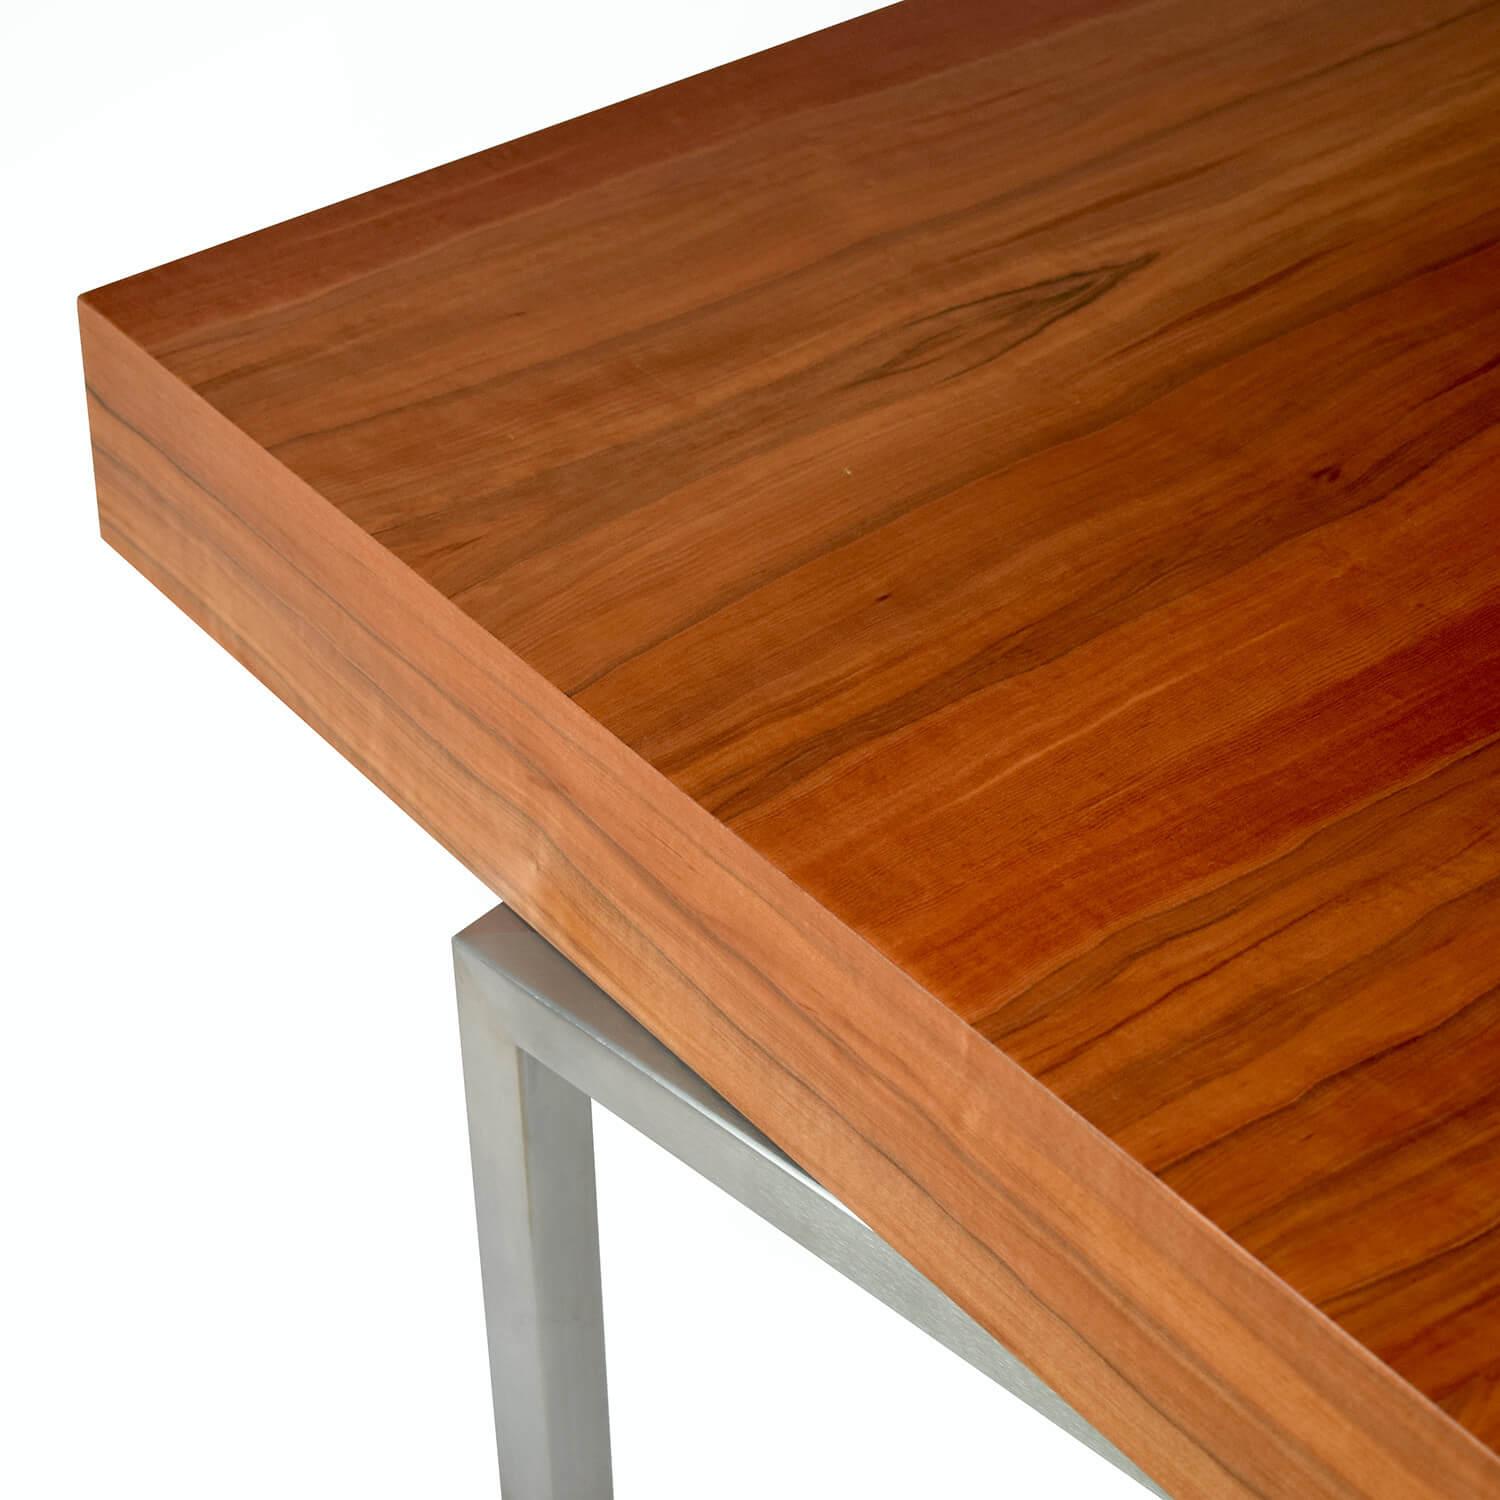 Der Executive Desk ExCentric 1.0 ist aus Tineo-Holz und gebürstetem Edelstahl gefertigt und kann in modernen Chefbüros und Home Offices eingesetzt werden. Dieses Stück wäre die ideale Ergänzung zu einem ExCentric 1.0 Sideboard.

Erhältlich in zwei